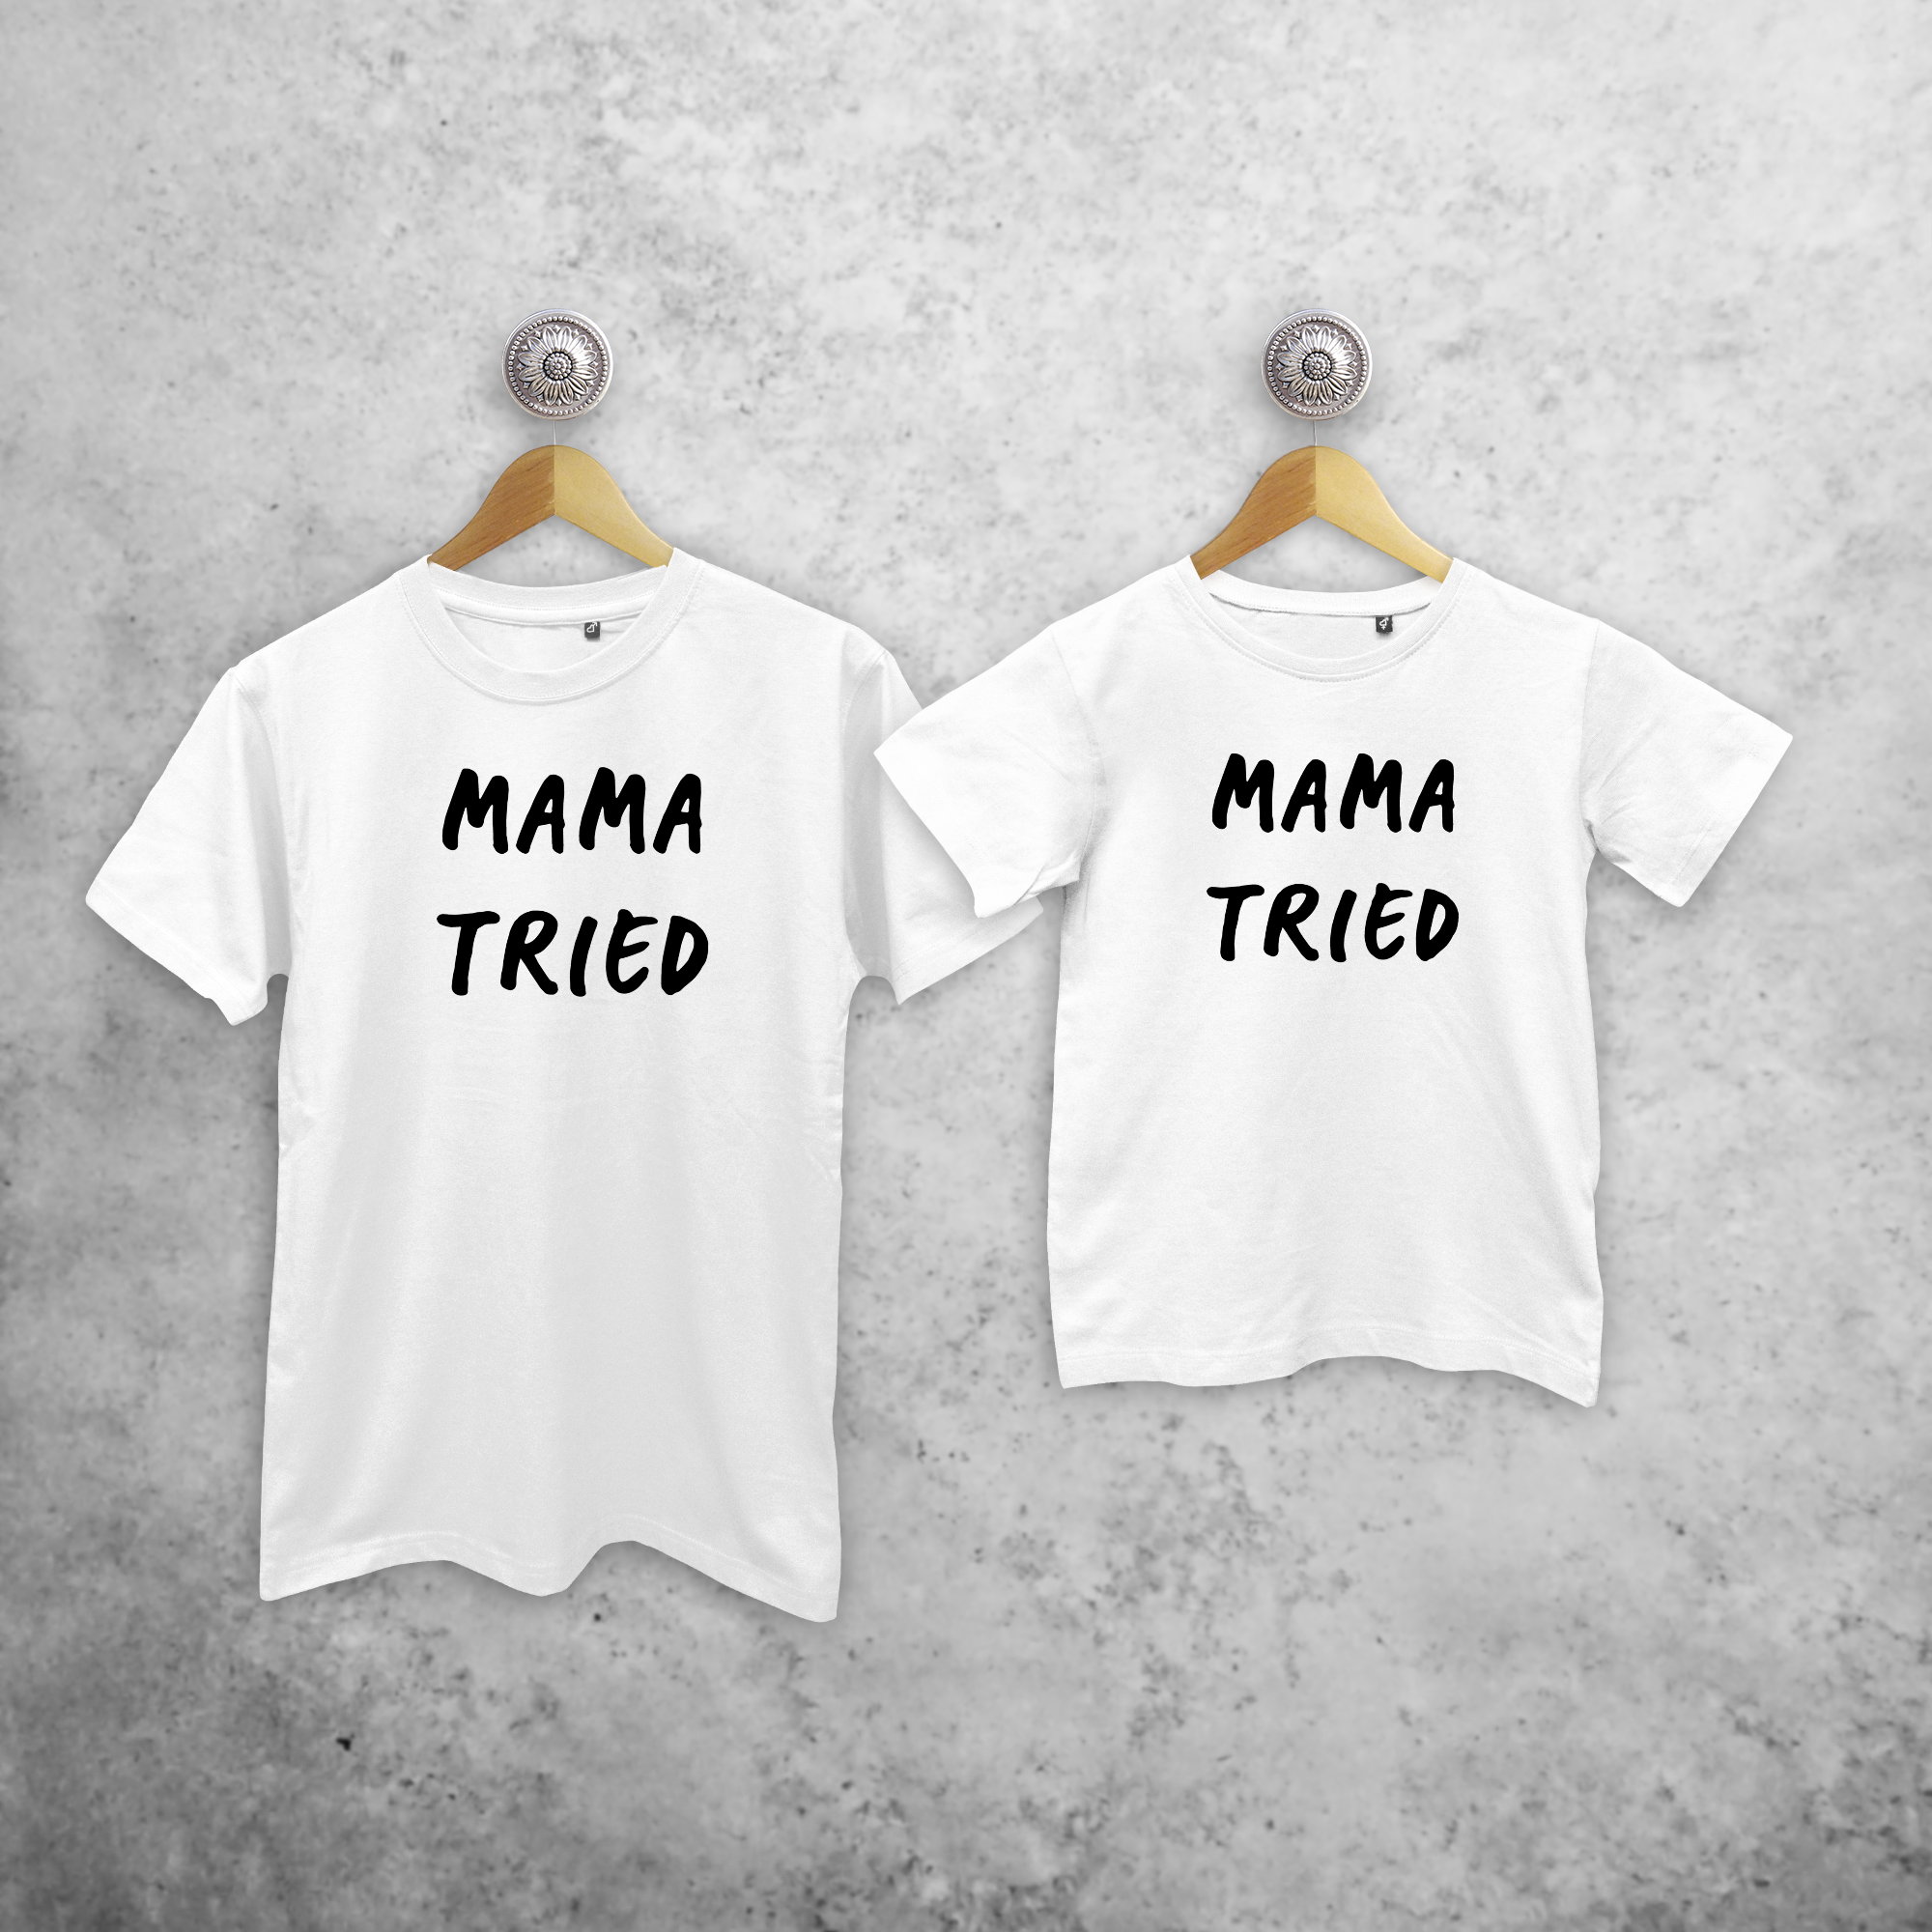 'Mama tried' matchende shirts